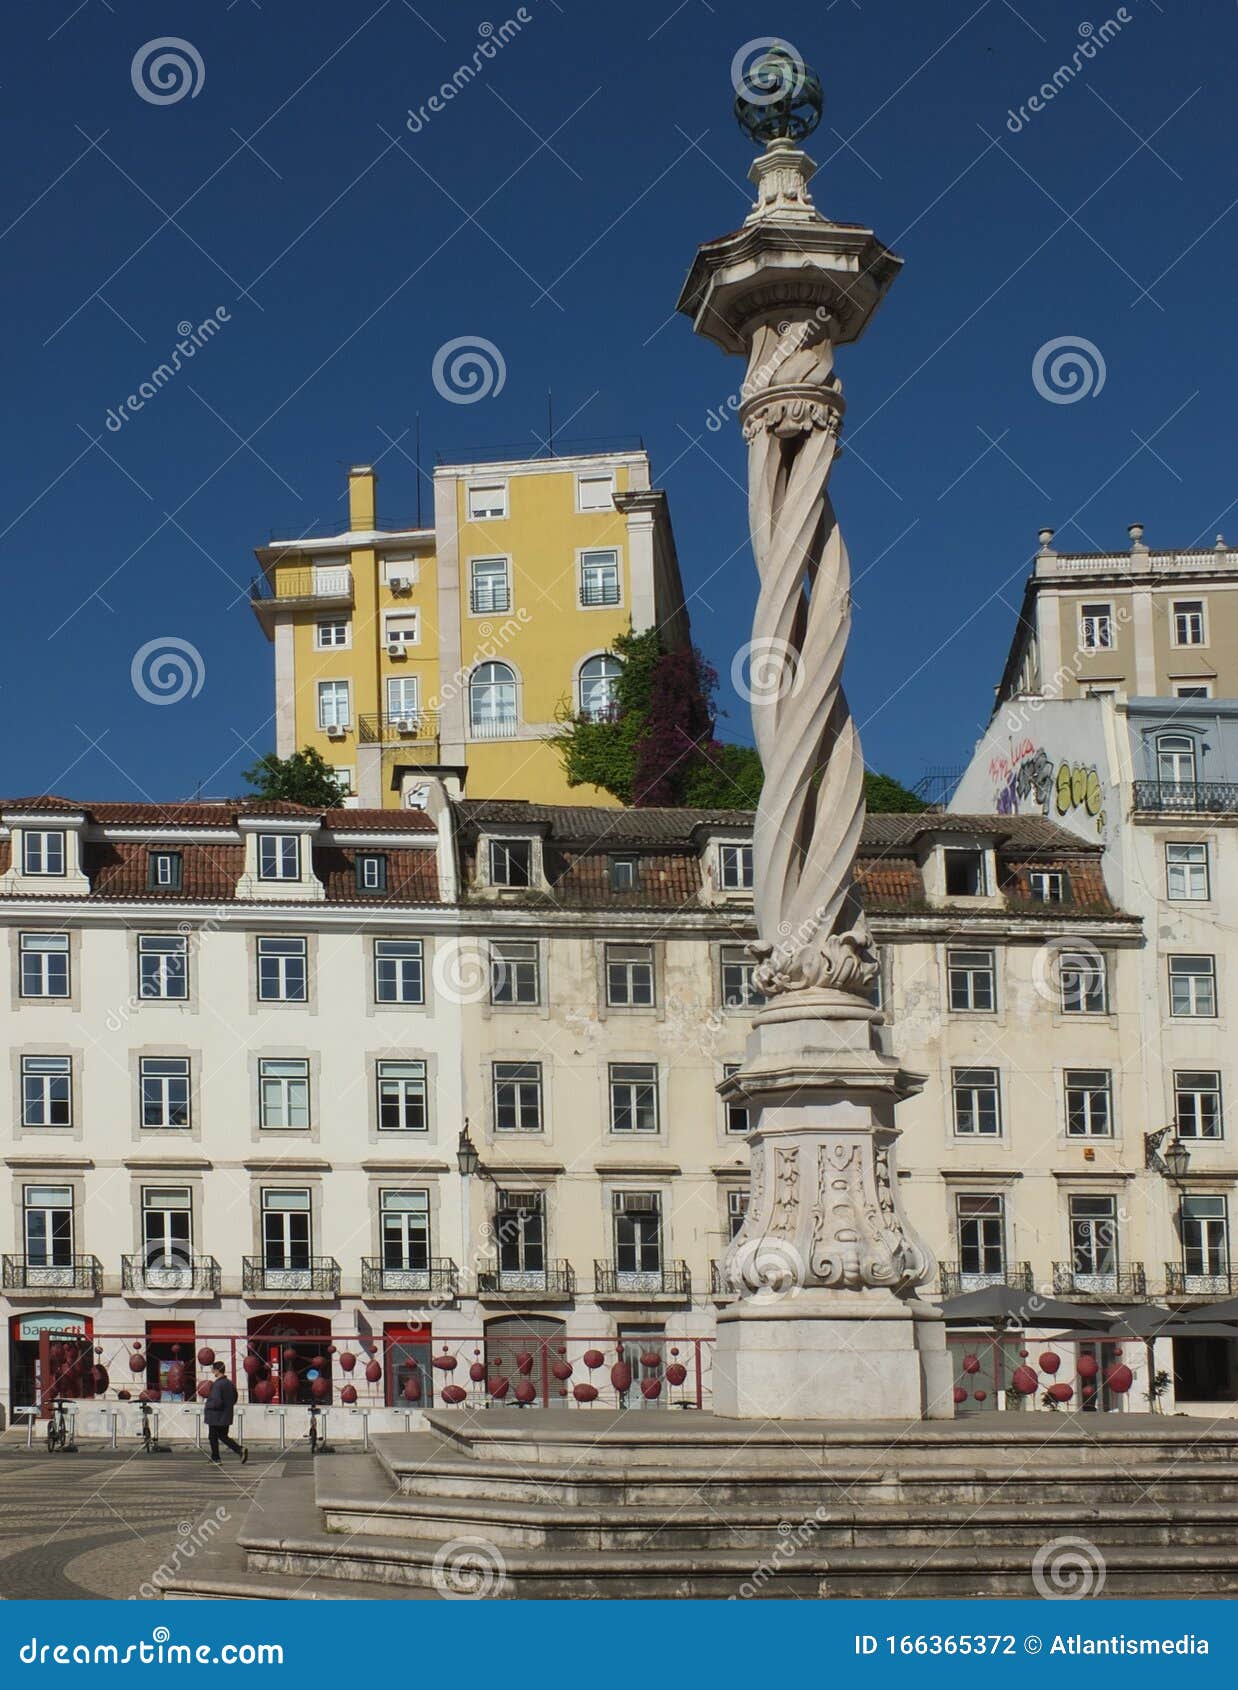 historic column at the municipio square in lisbon - portugal